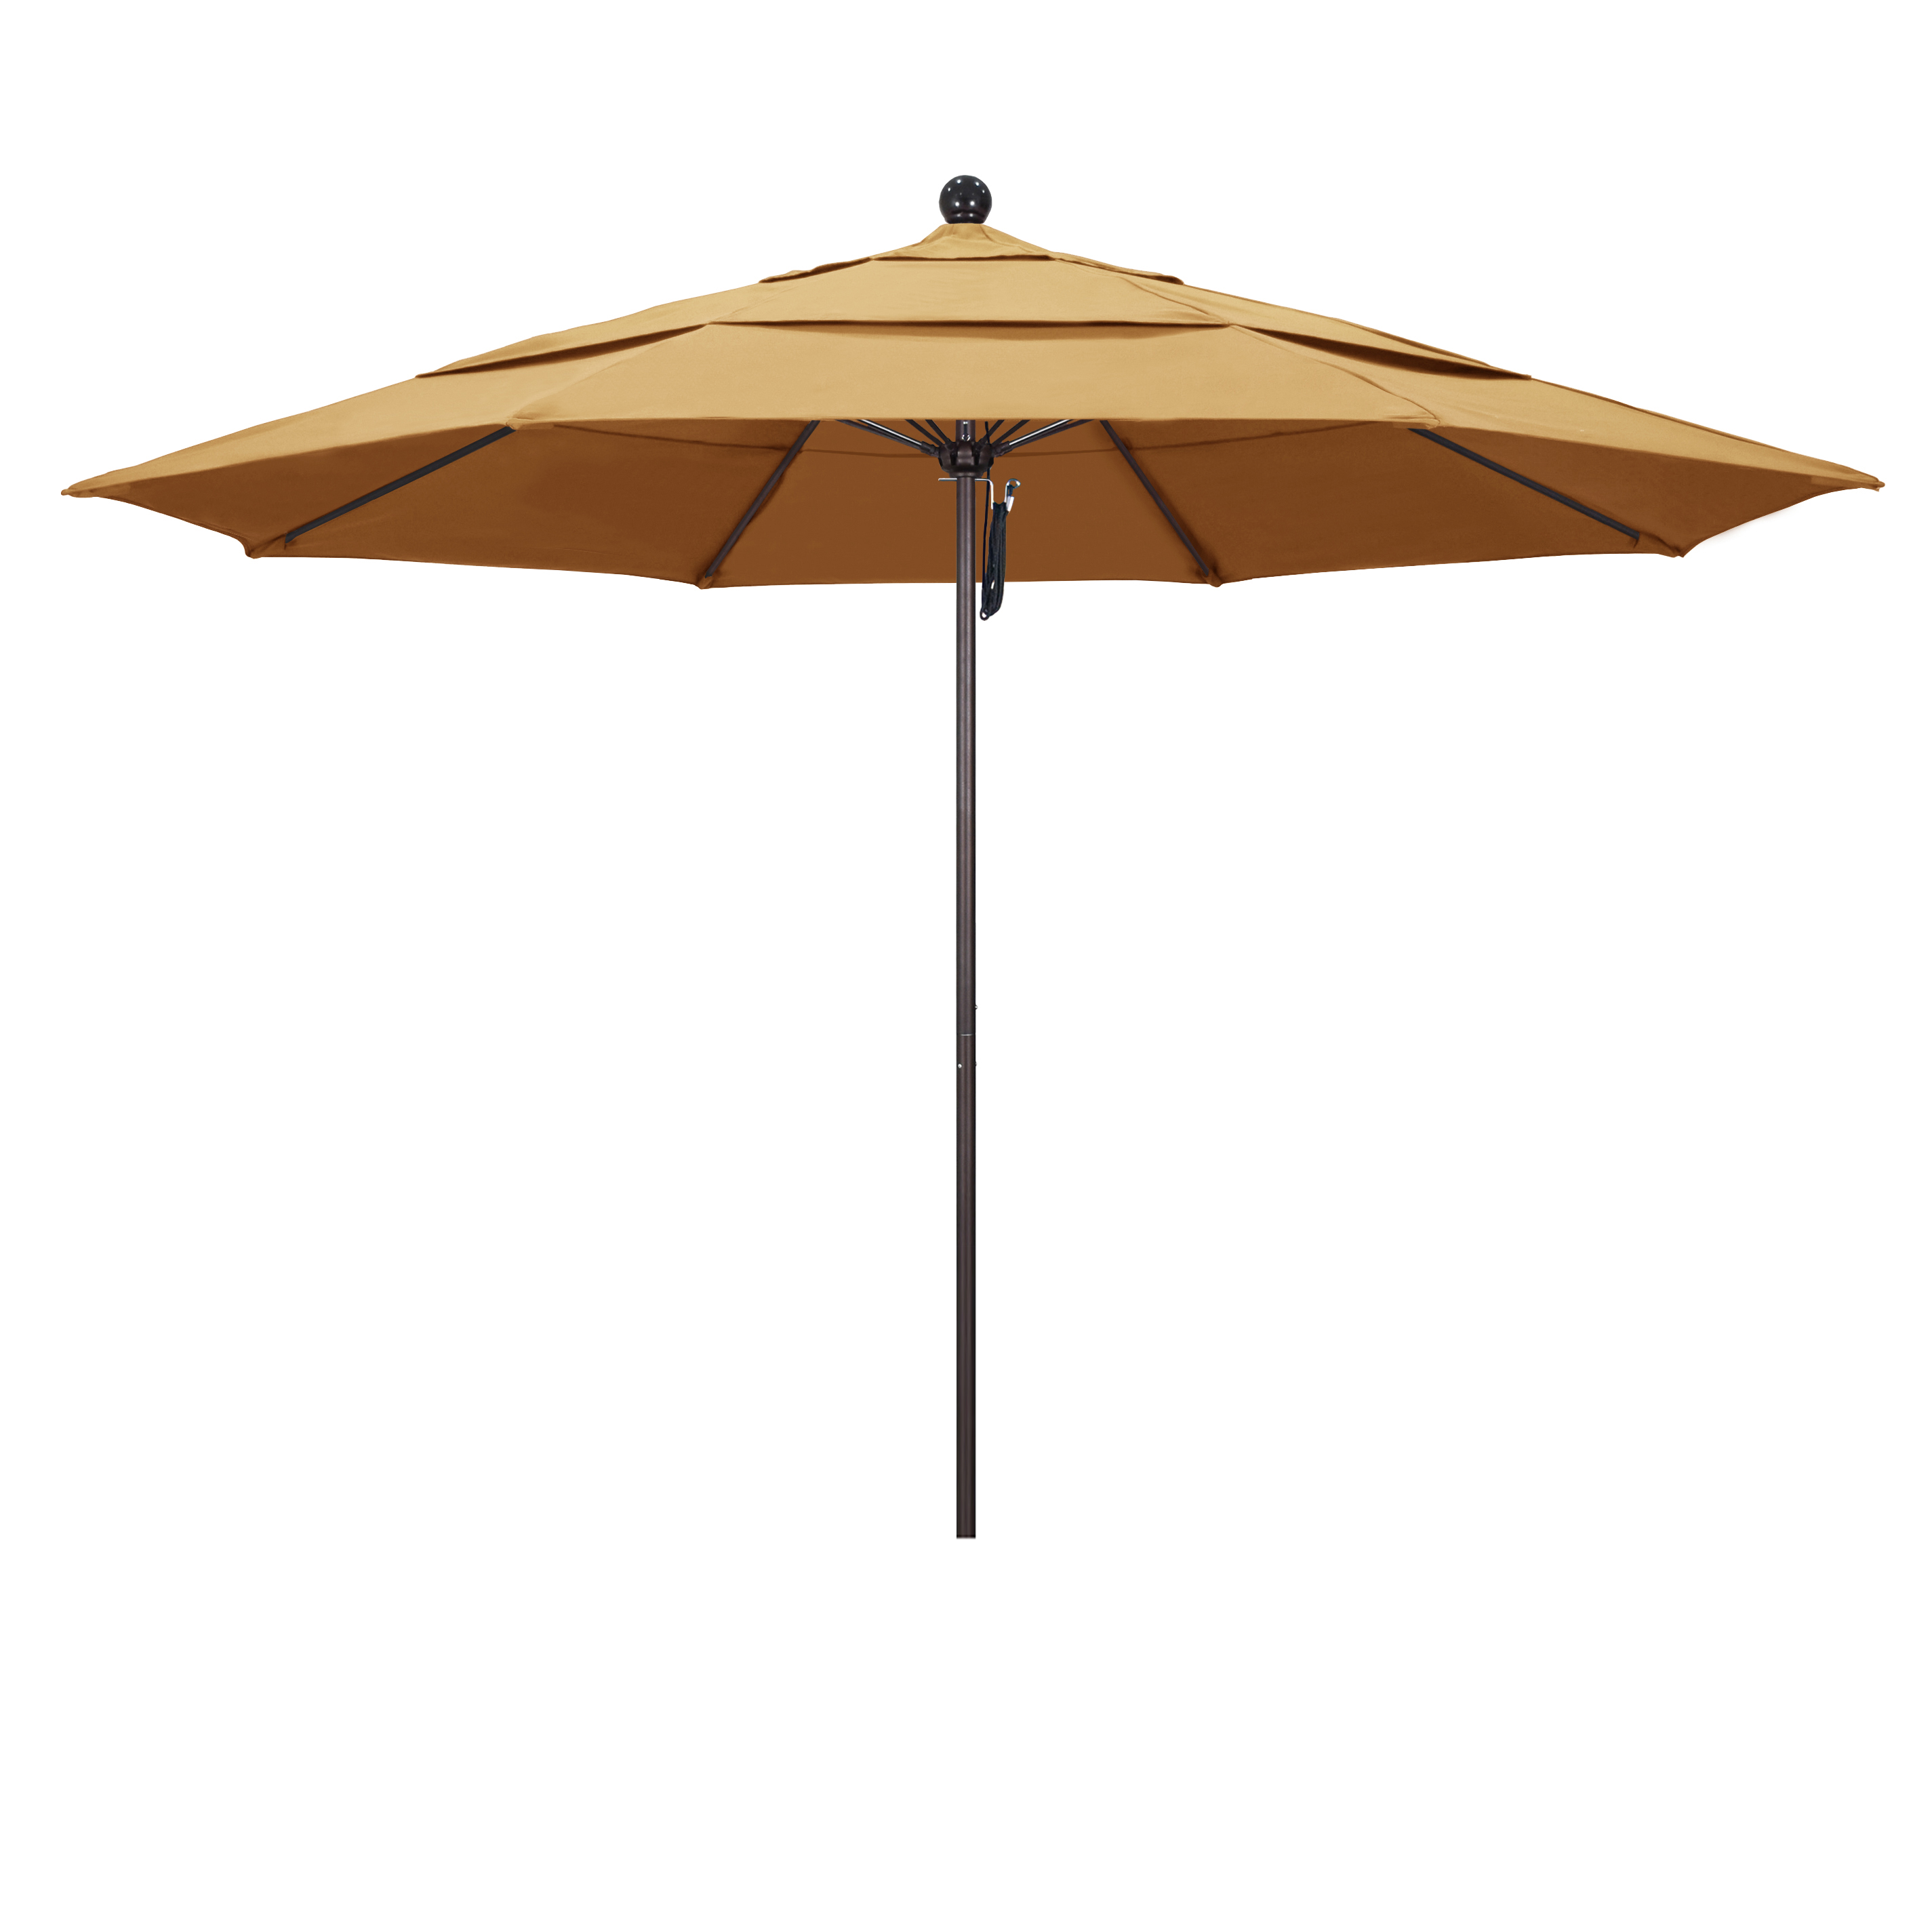 Picture of California Umbrella ALTO118117-5414-DWV 11 ft. Fiberglass Pulley Open Double Vents Market Umbrella - Bronze and Sunbrella-Wheat